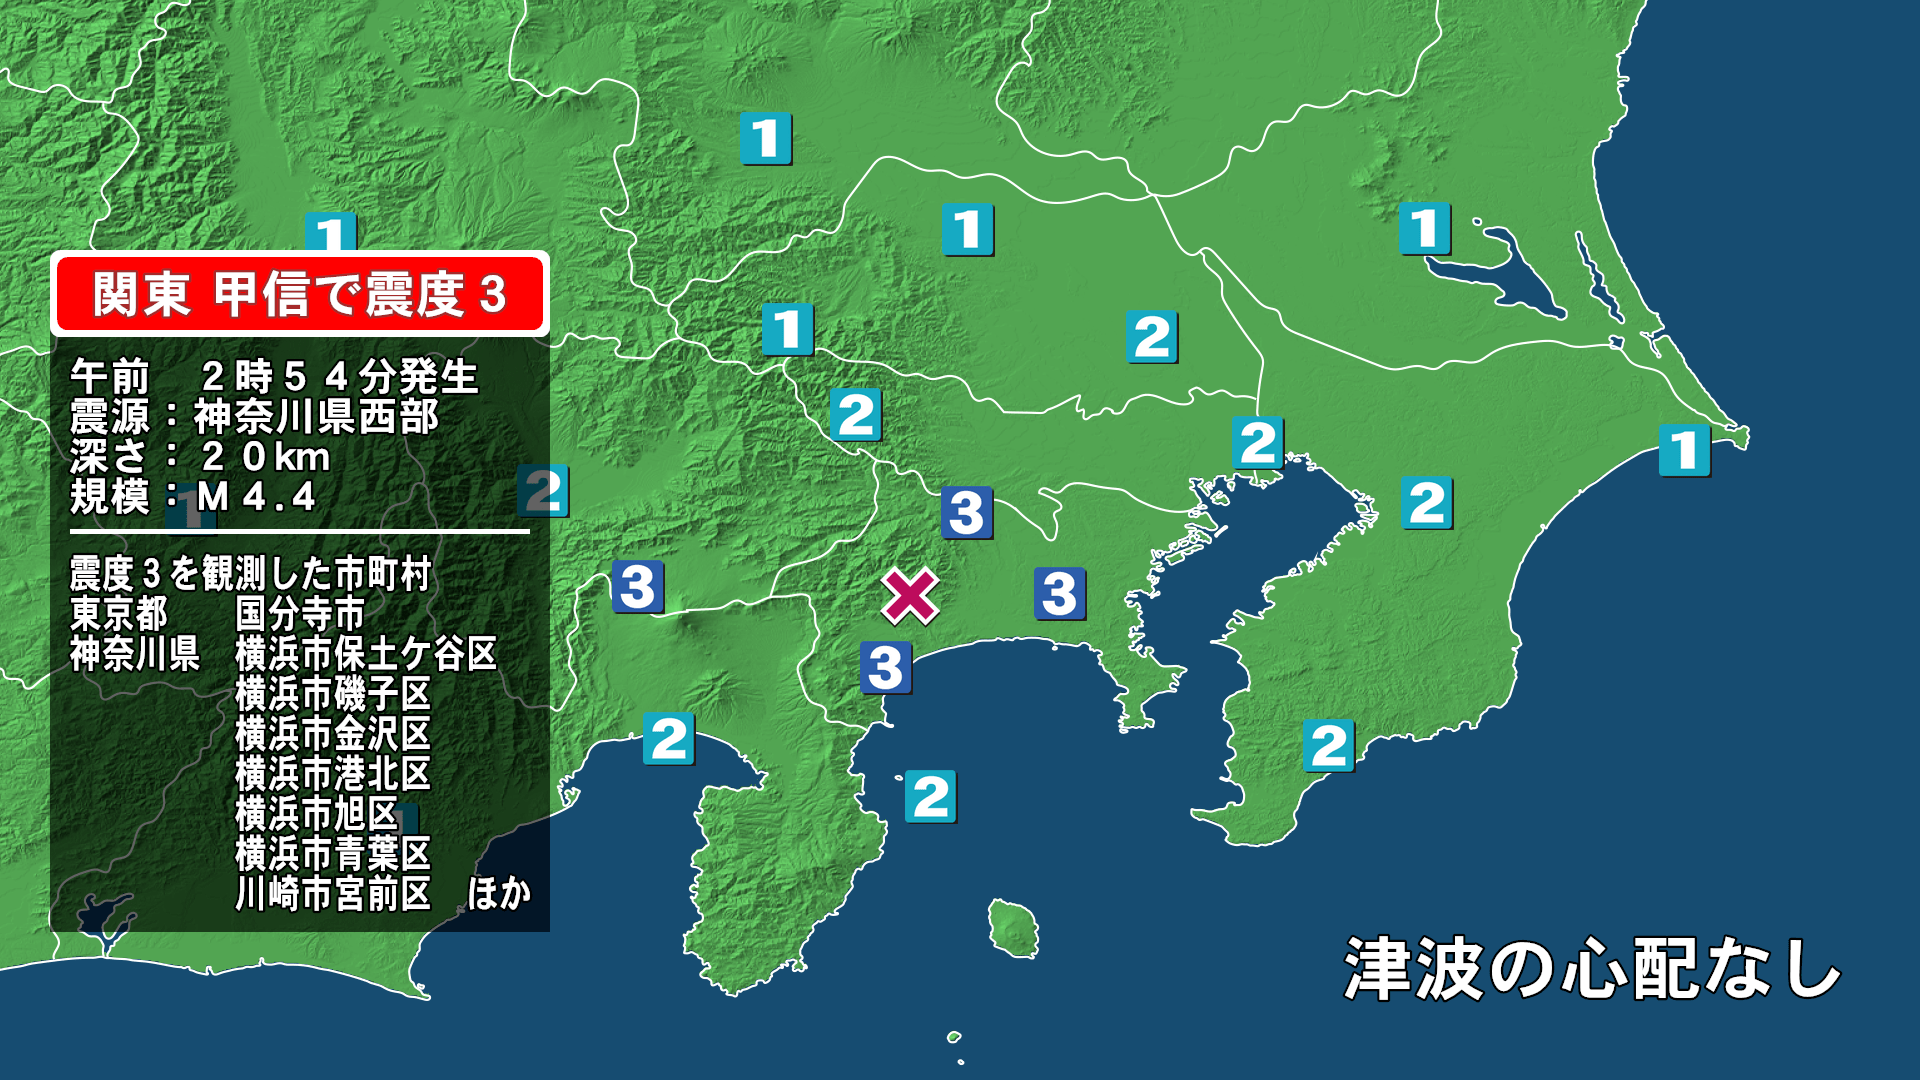 神奈川 地震 神奈川県東部の震度3以上の観測回数